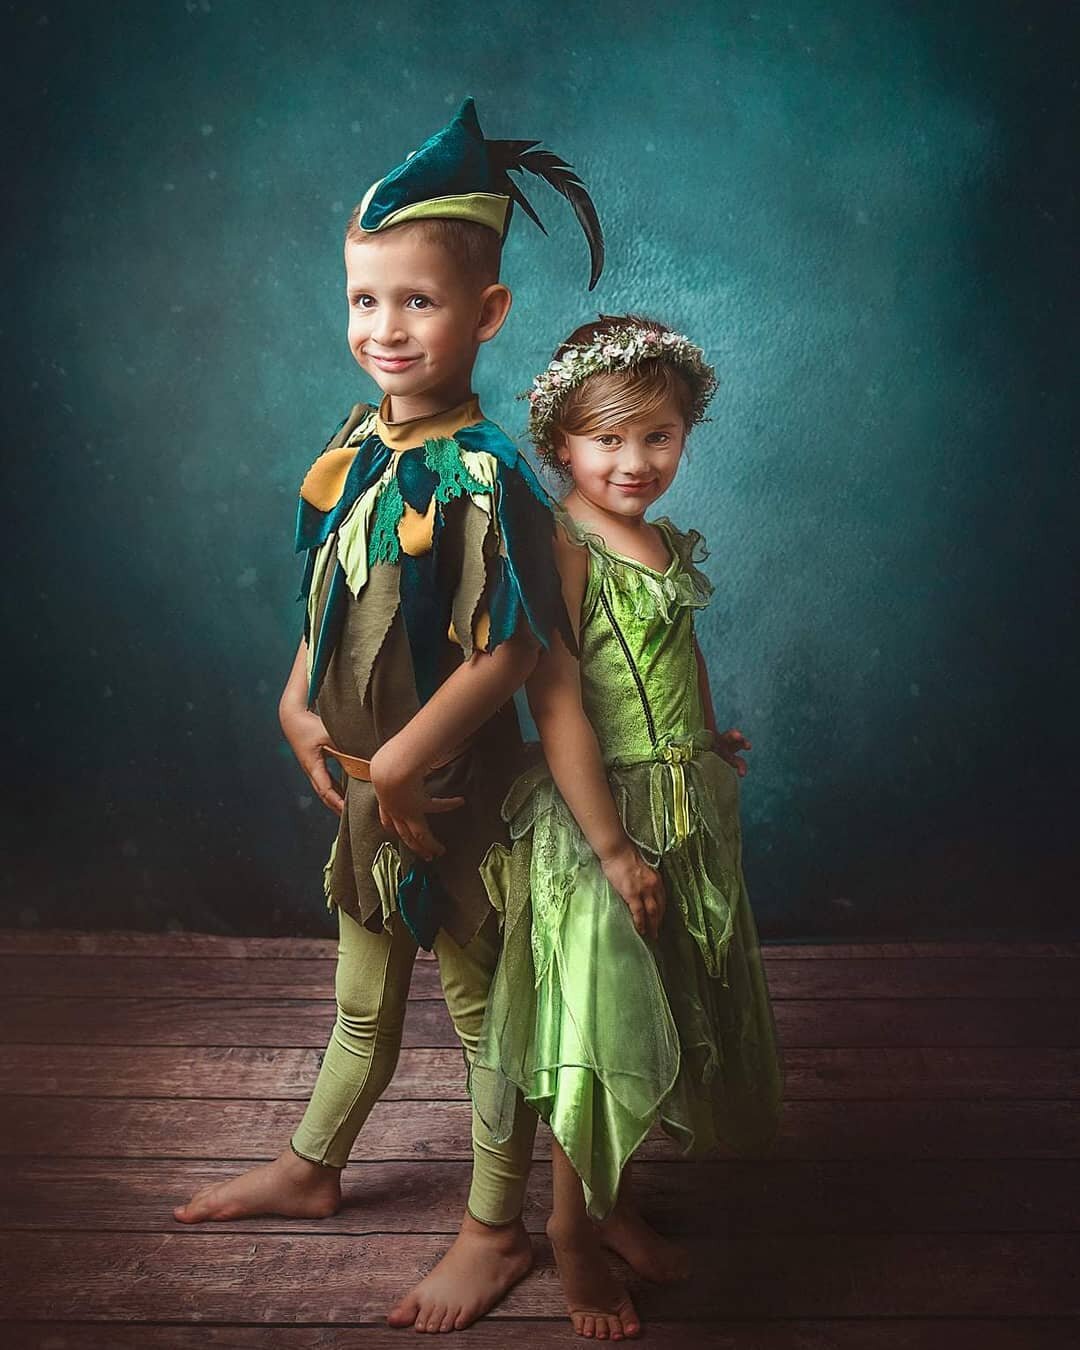 Petar Pan i Zvončica 💕
#bajke #bajka #bajkezadjecu #djecjifotograf #djecjikostim #fineartphotography #childphotographer #kidsportraits #fotografiranjedjece